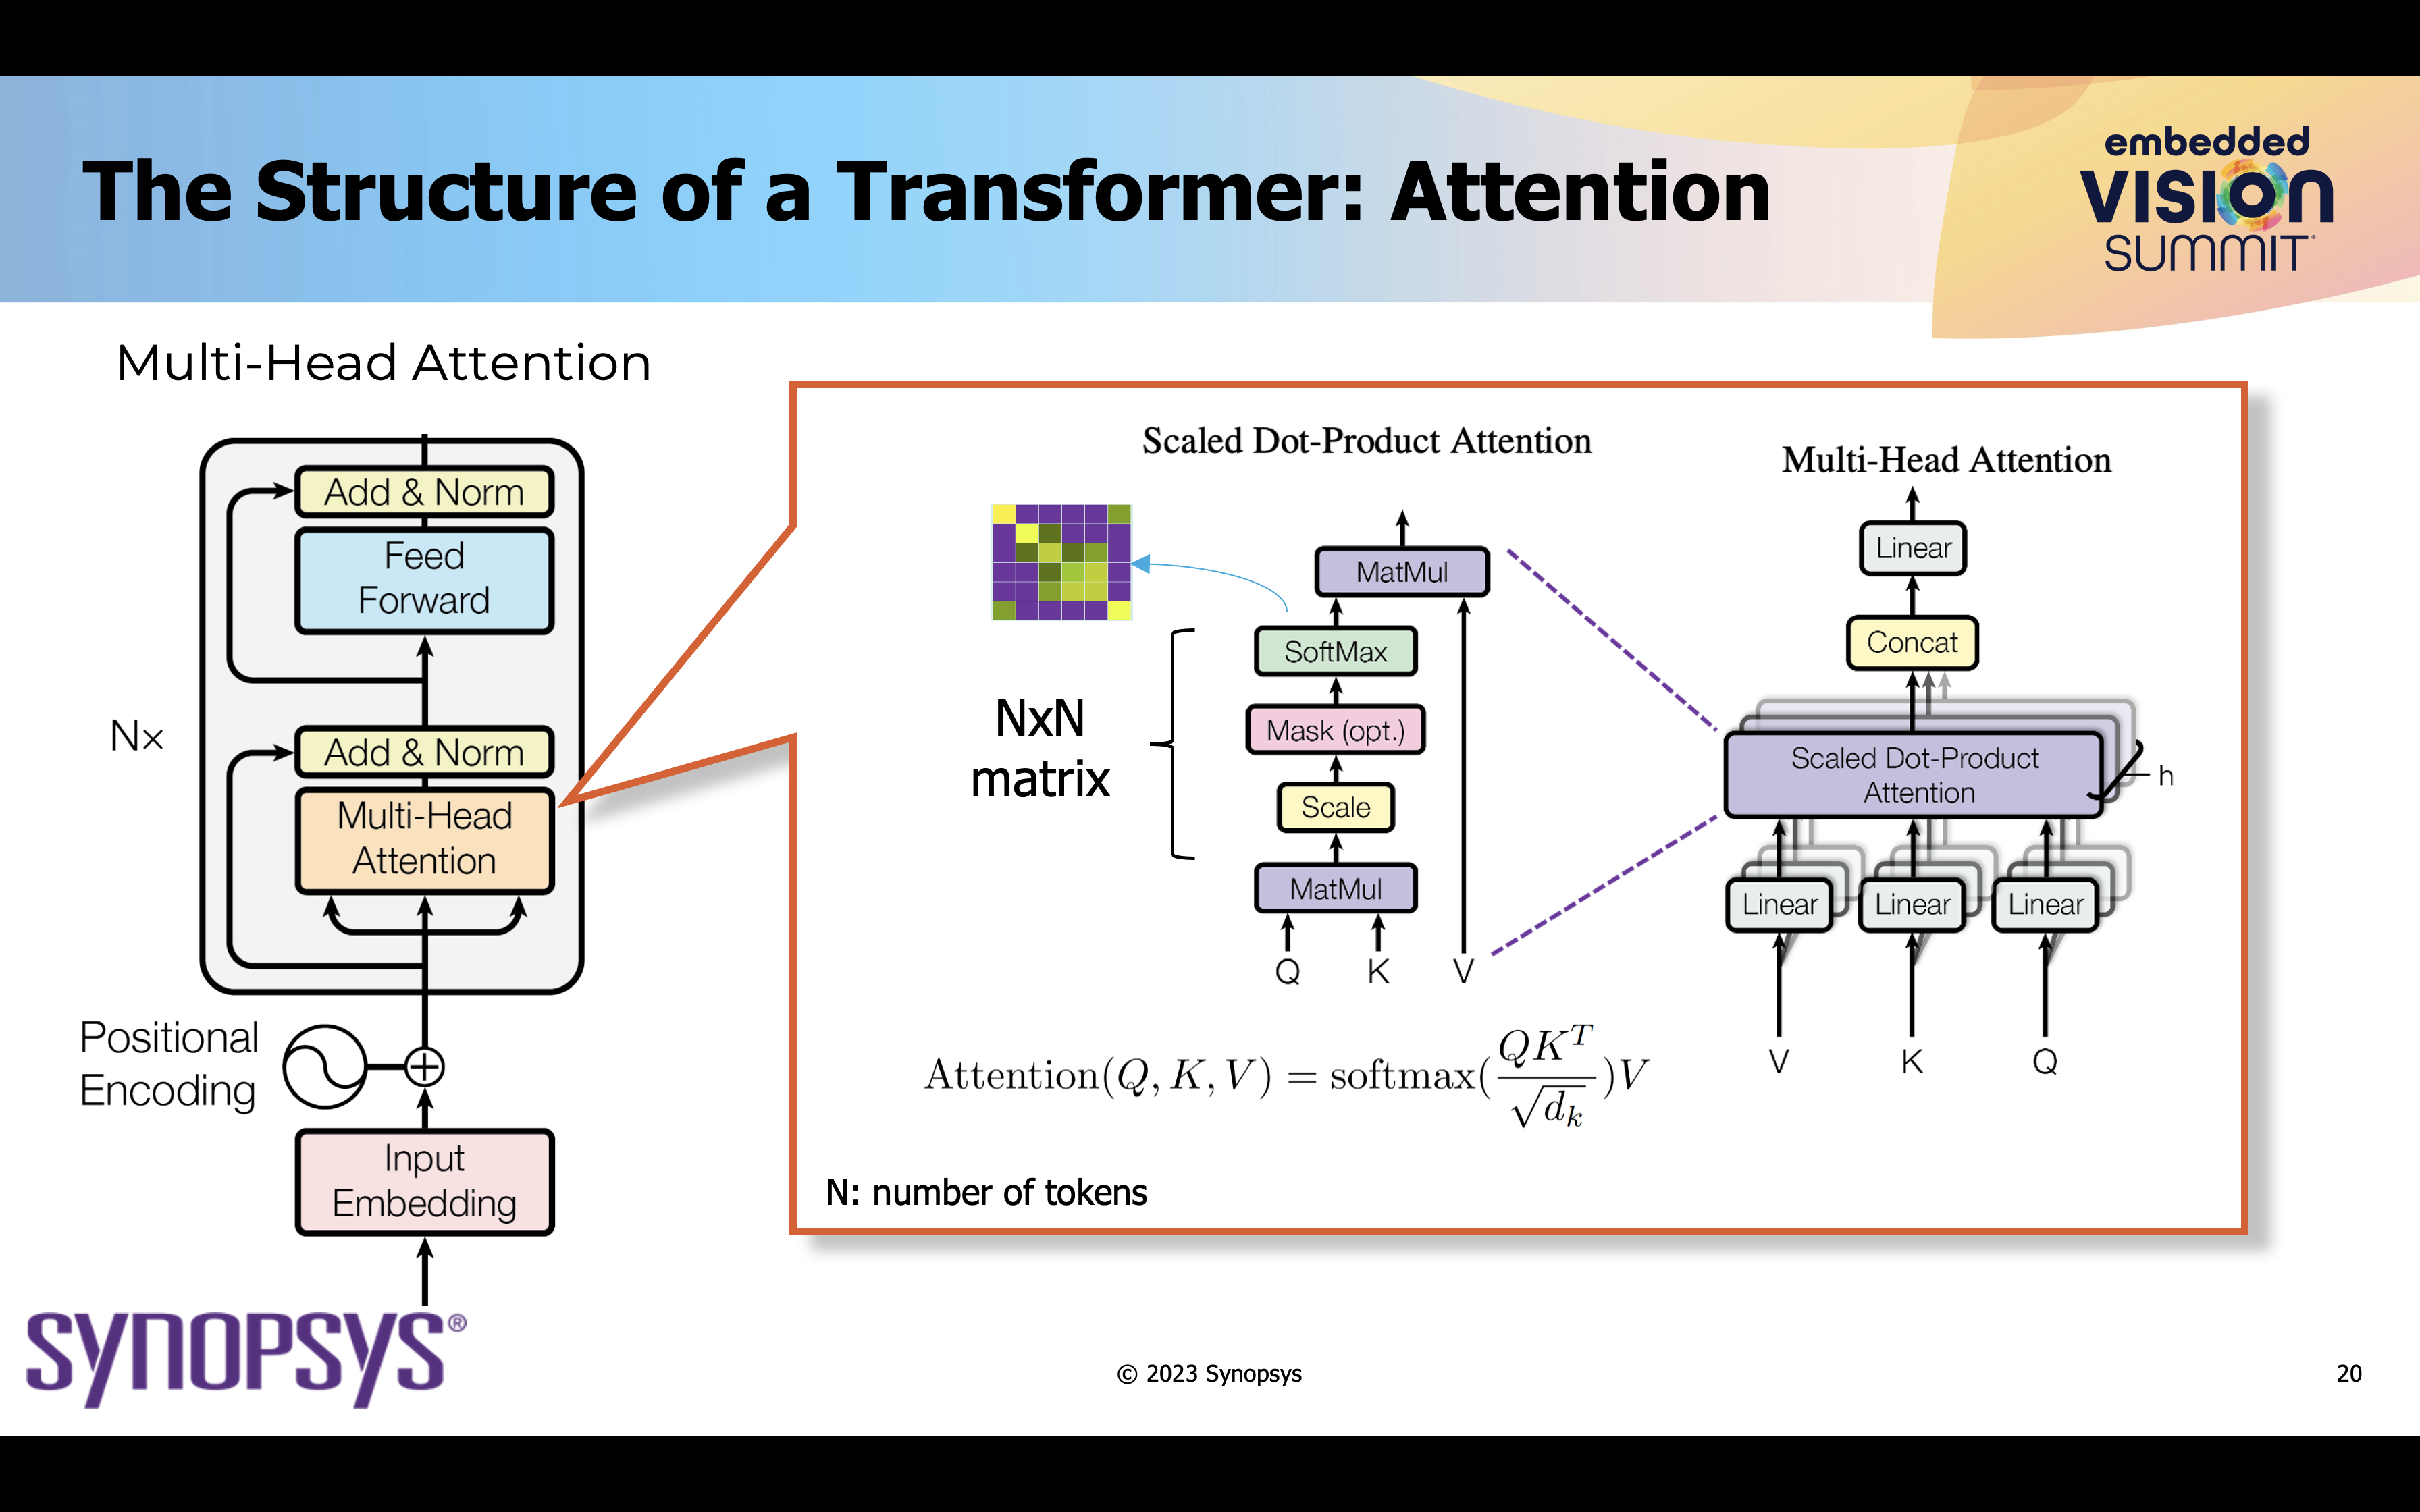 Transformers som transformerar datorseendet - Semiwiki